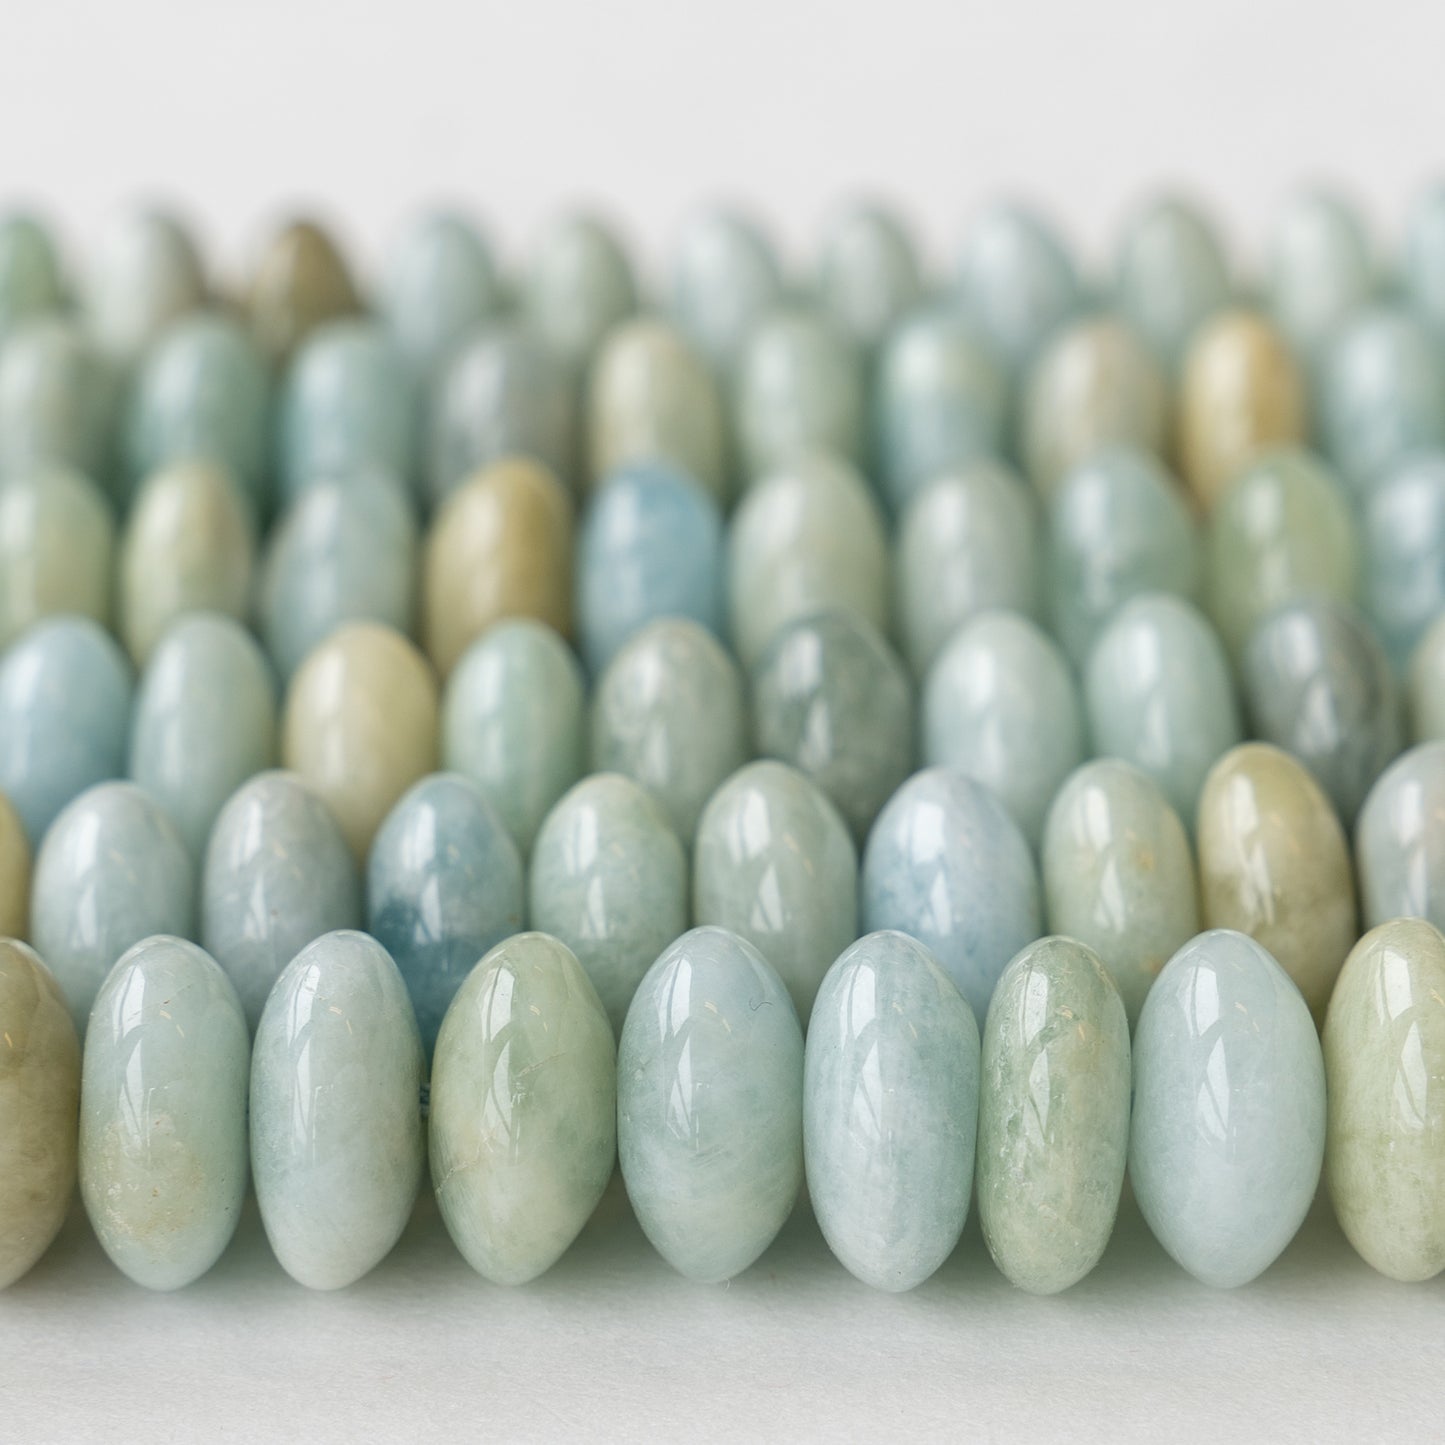 6x12mm Round Aquamarine Gemstone Beads - 16 Inches